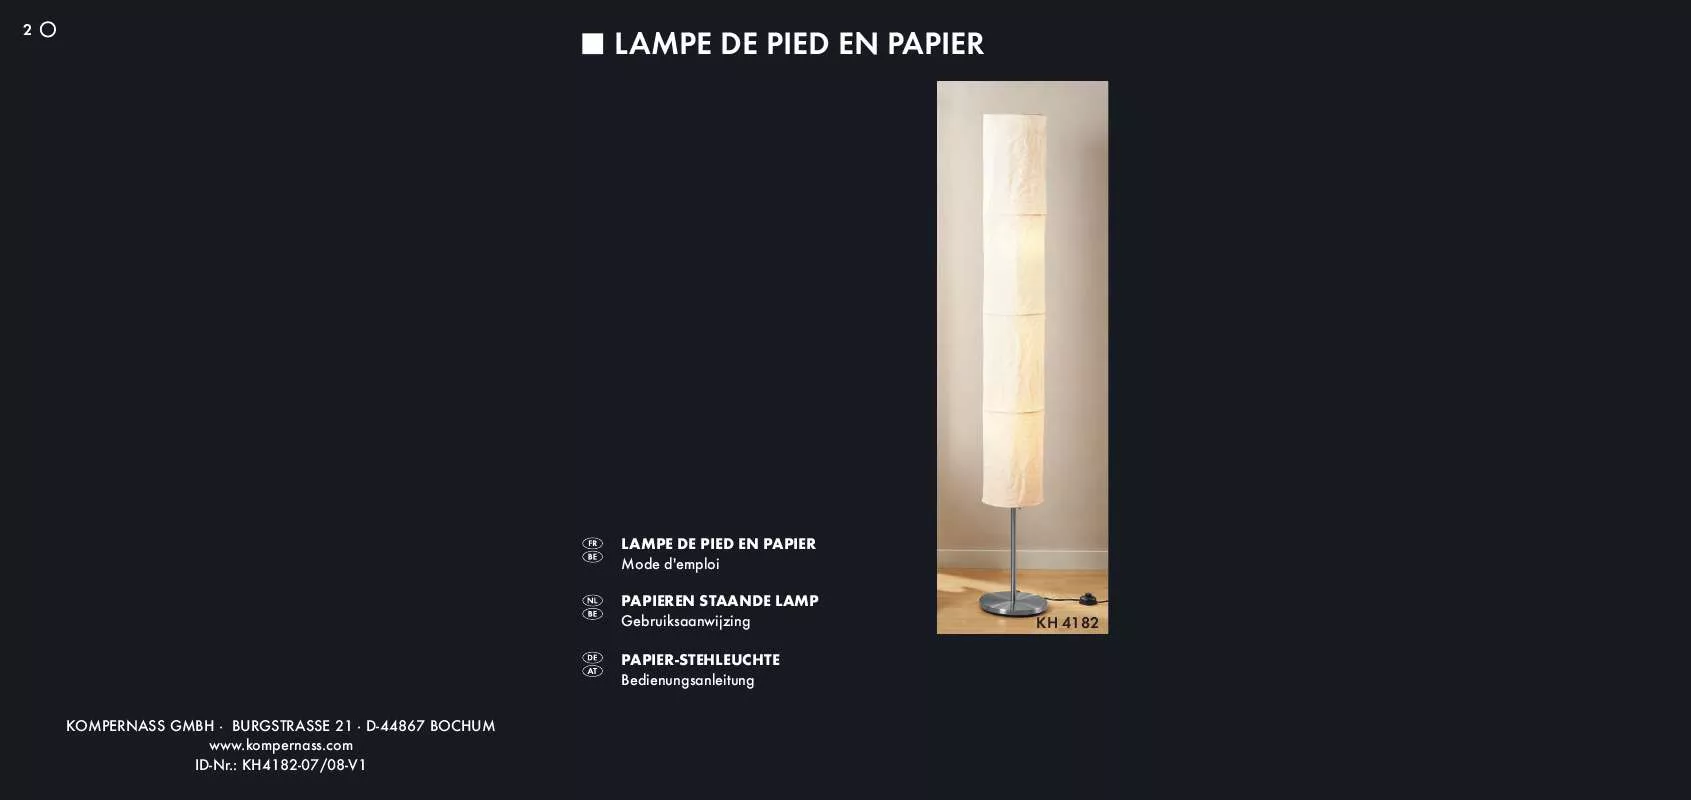 Mode d'emploi KOMPERNASS KH 4182 PAPER FLOOR LAMP